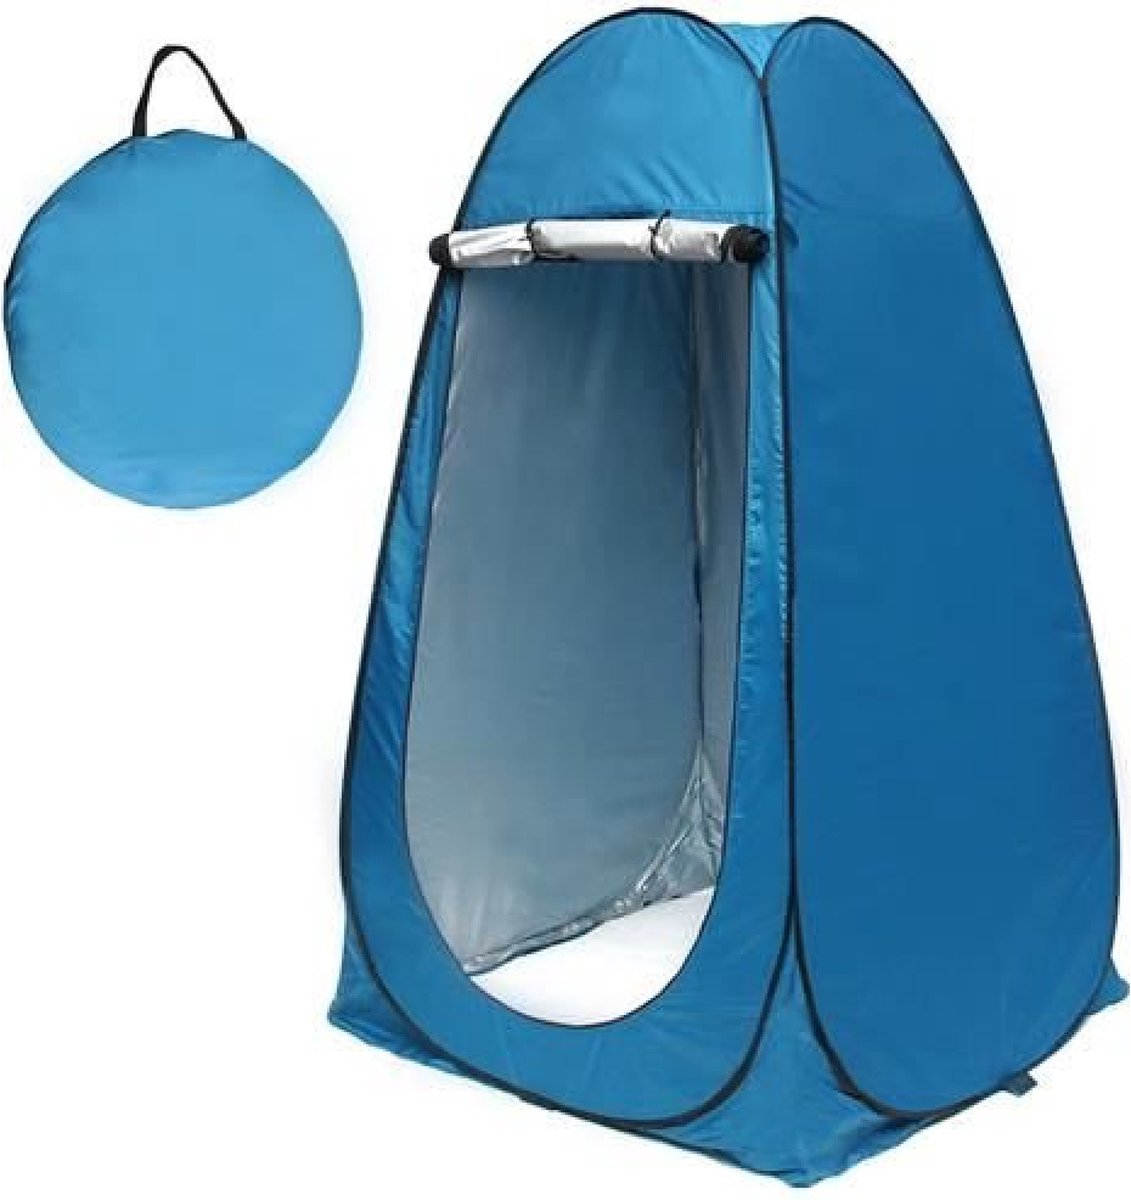 Universele Douchetent - Blauw - 110x110x190(lxbxh) - Schuurtent Camping - Omkleedtent - Waterbestendig - Opvouwbaar - Incl. Opbergtas